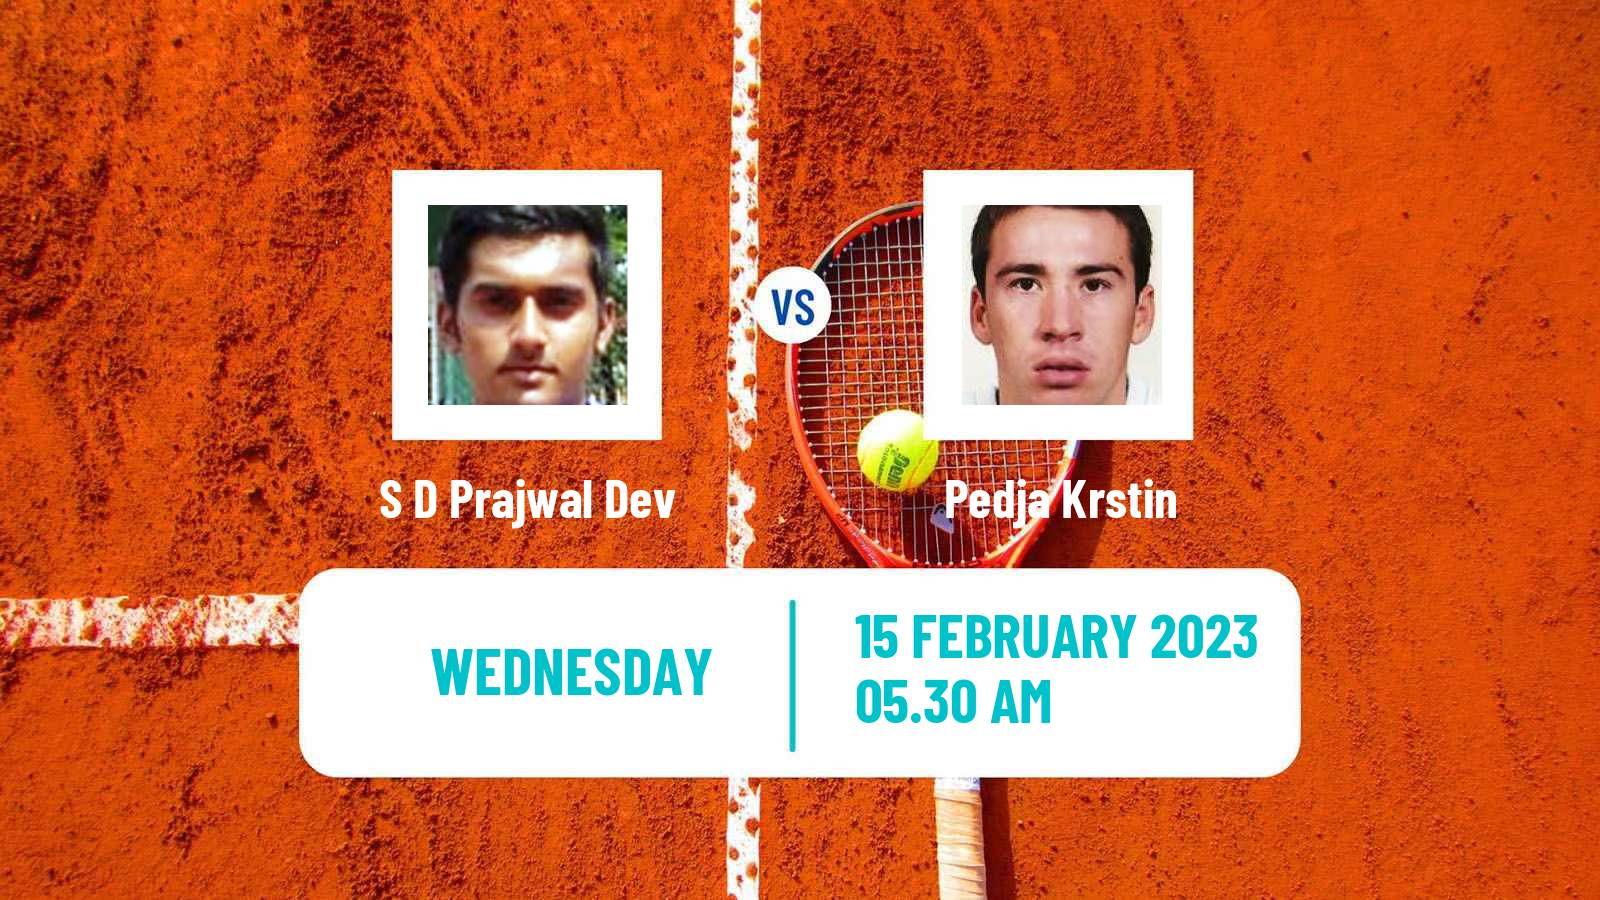 Tennis ITF Tournaments S D Prajwal Dev - Pedja Krstin